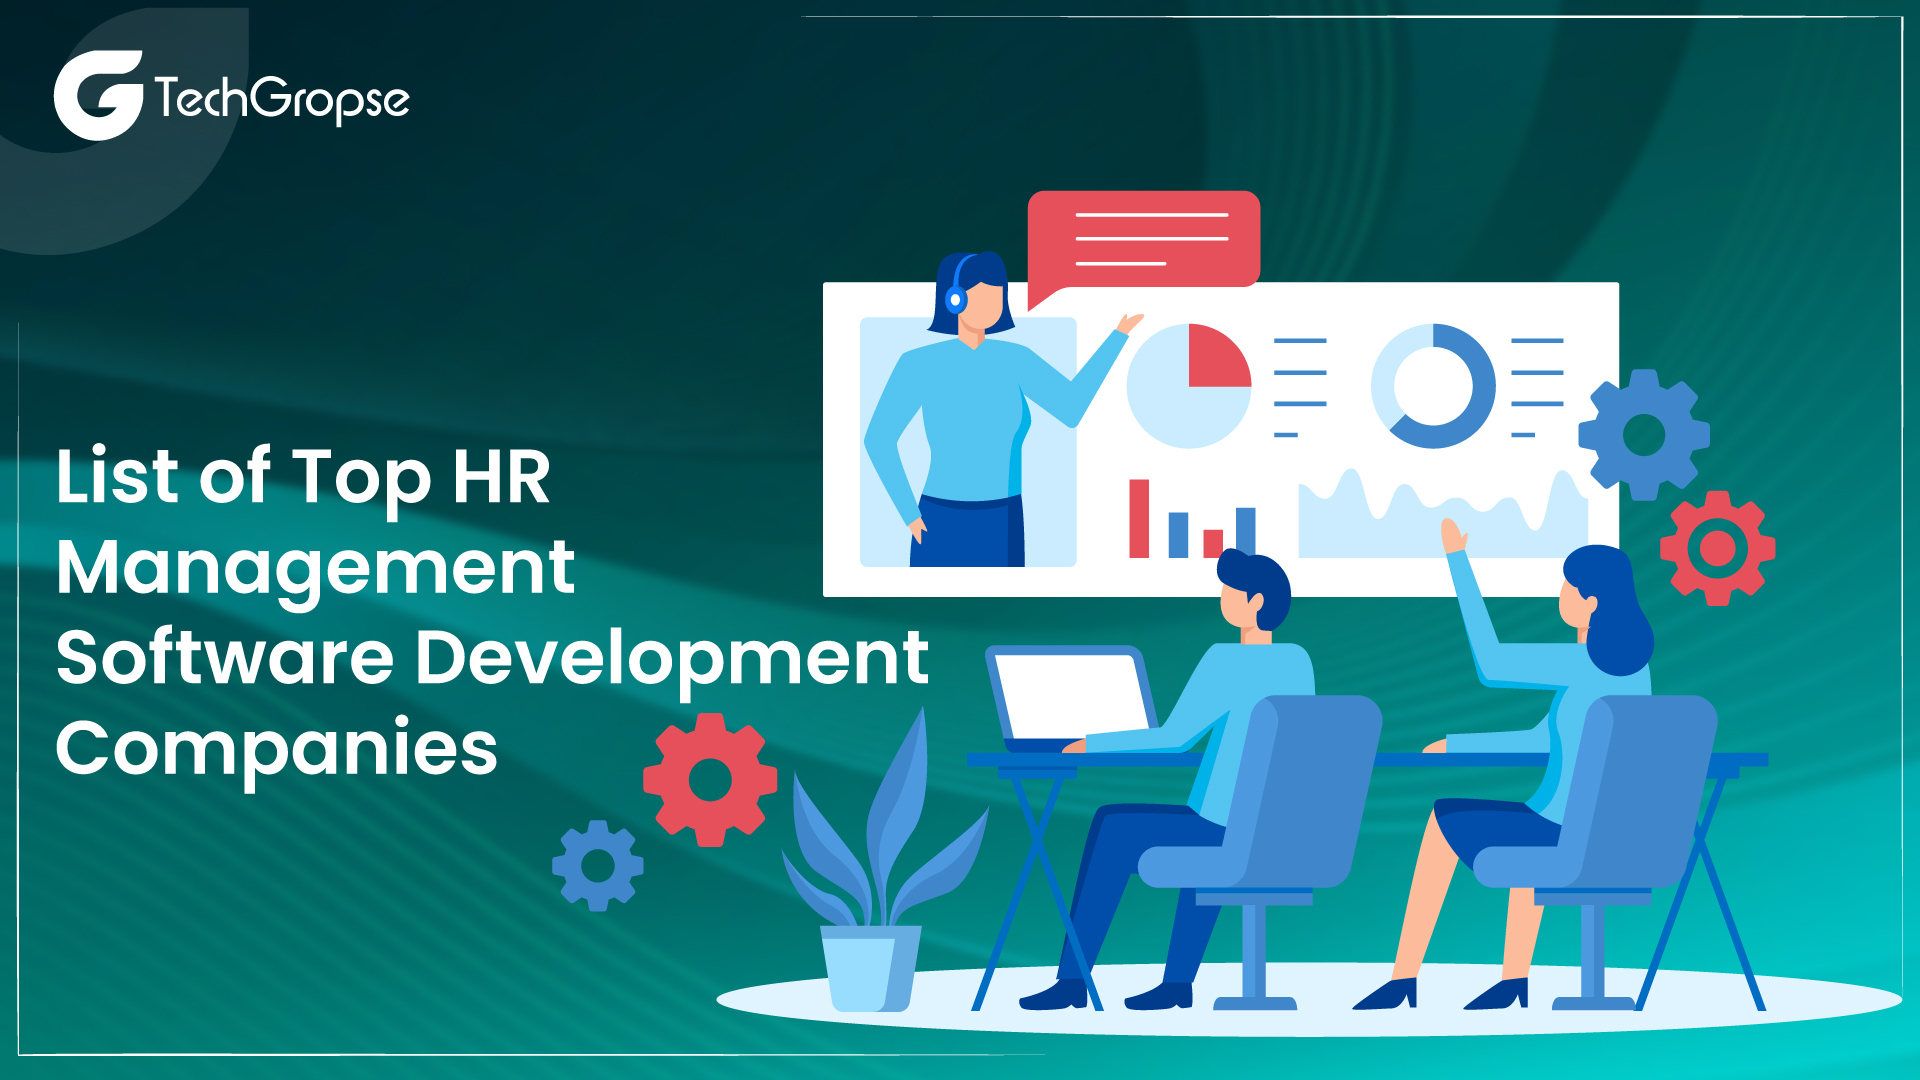 List of Top HR Management Software Development Companies